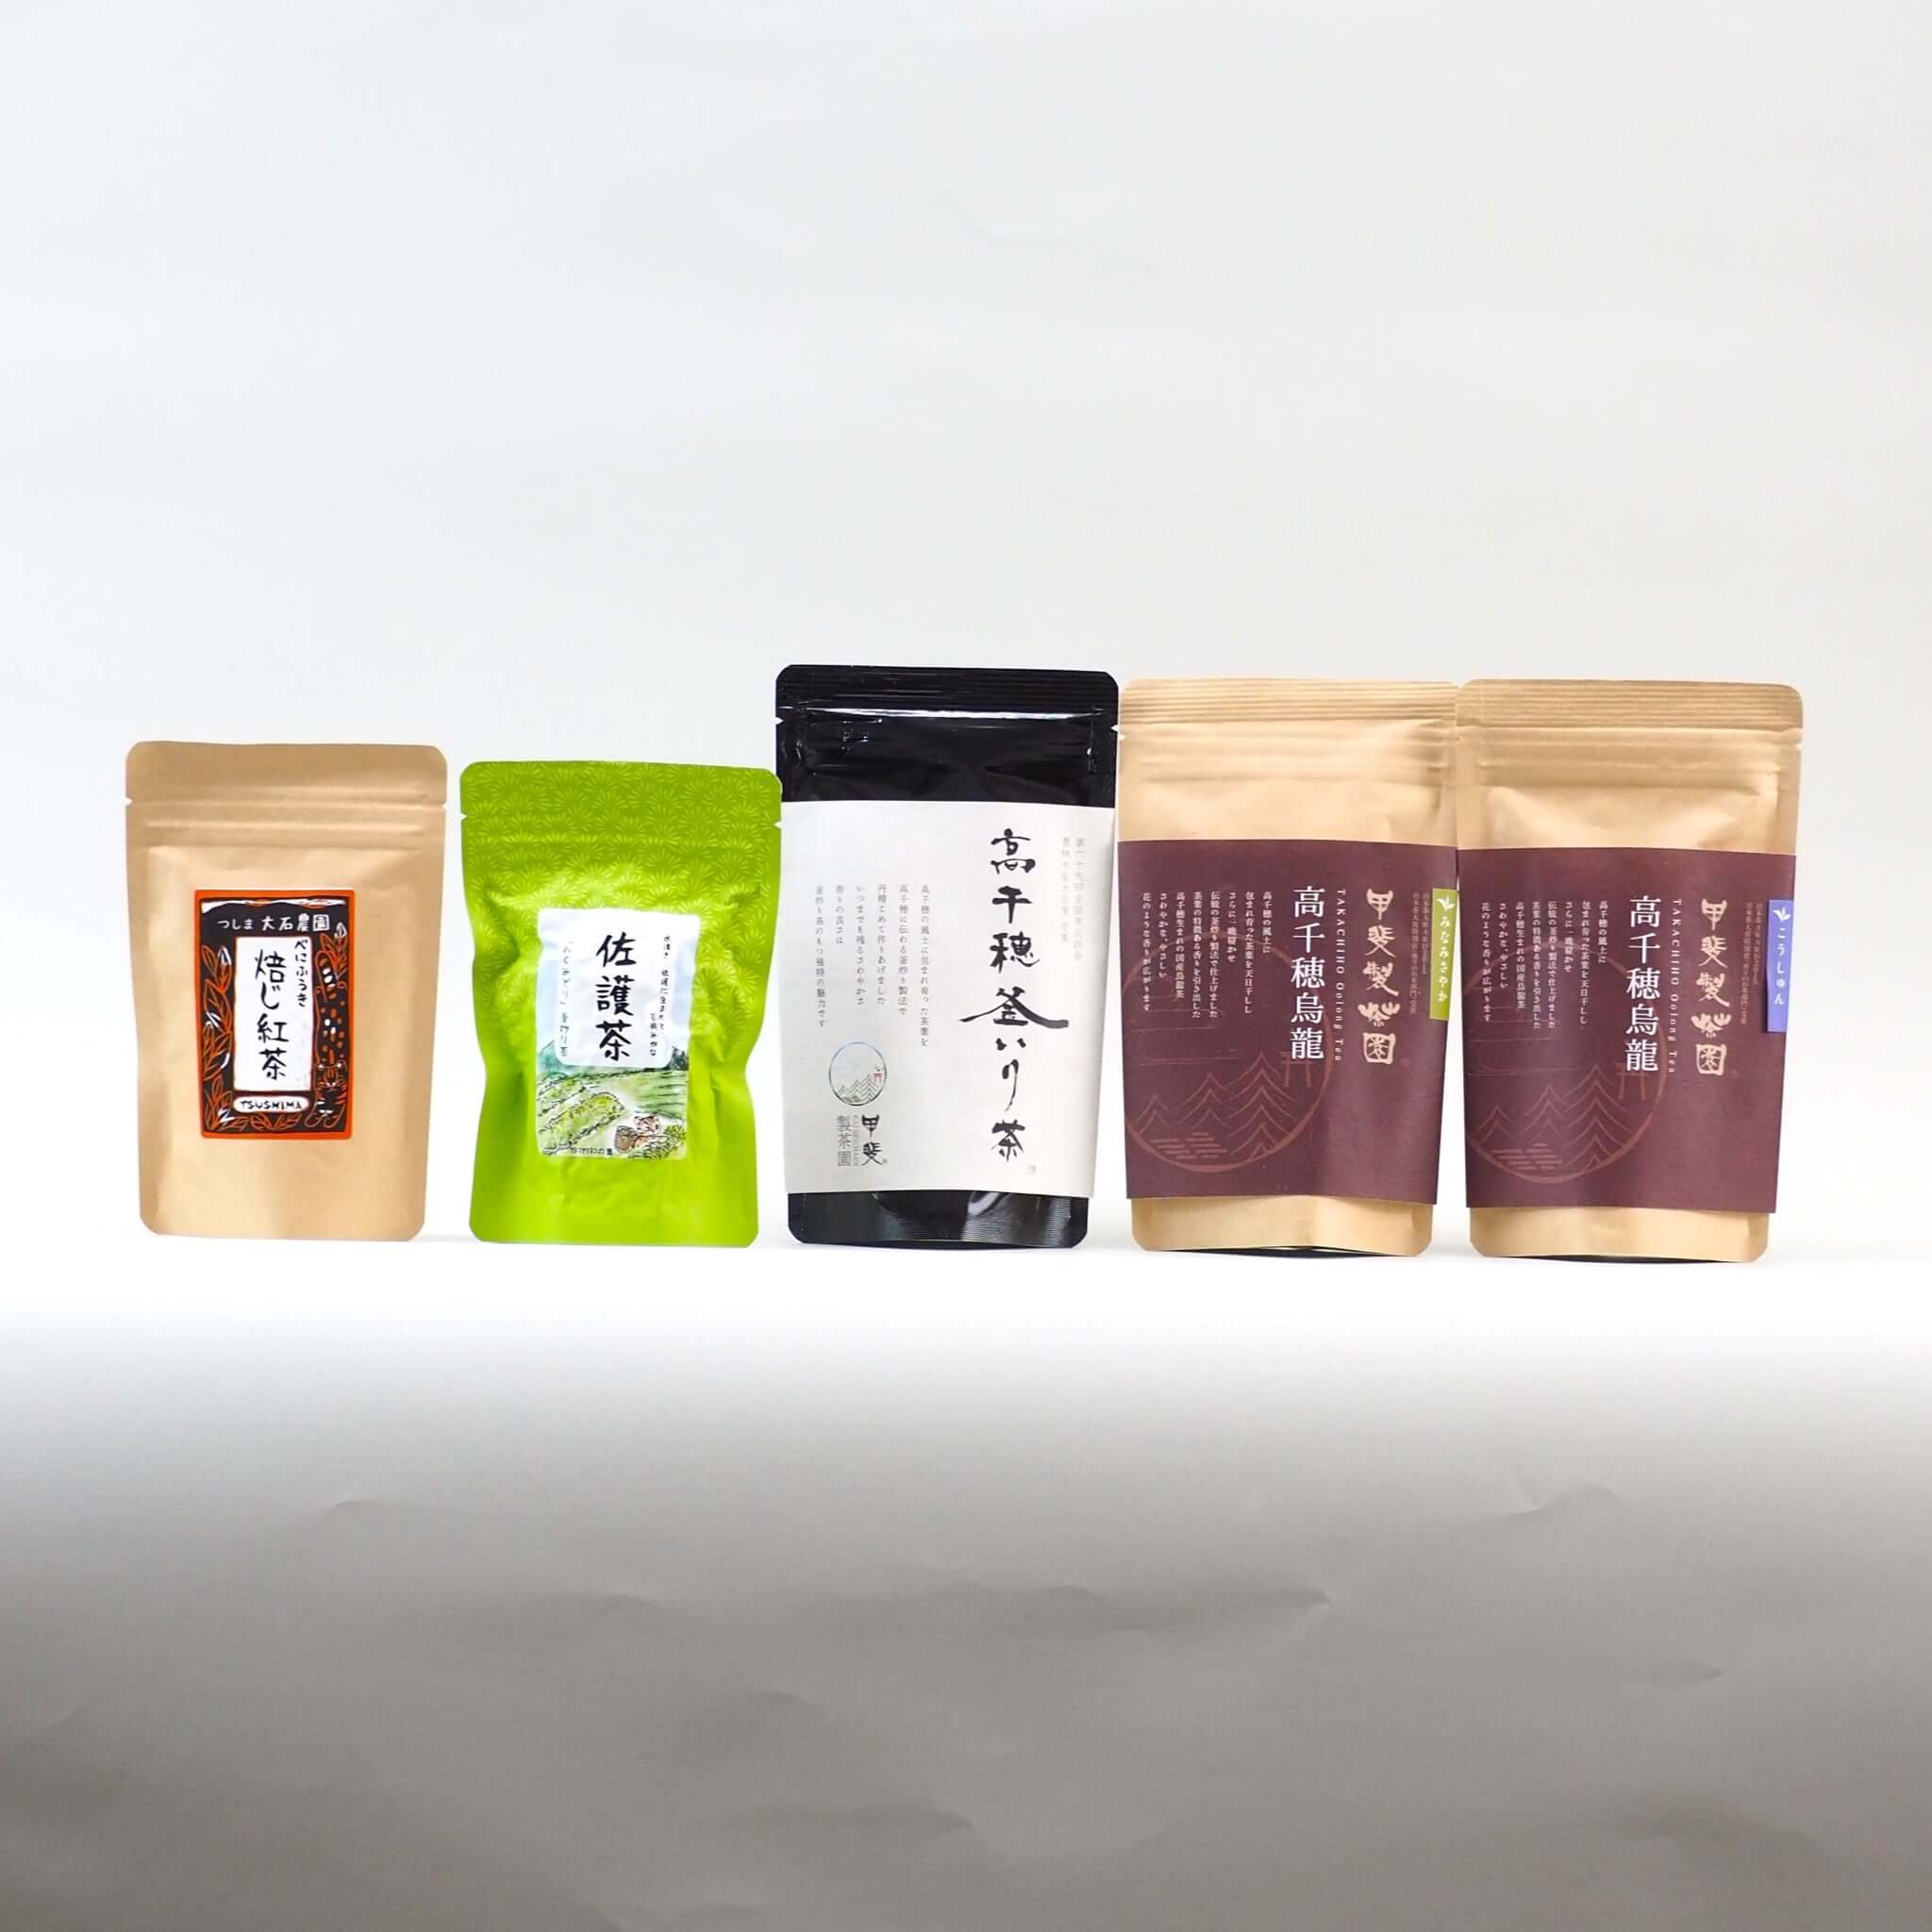 黒漆塗箱 (中国茶・台湾茶向け急須箱) – 煎茶 中国茶 台湾茶向け 日本 